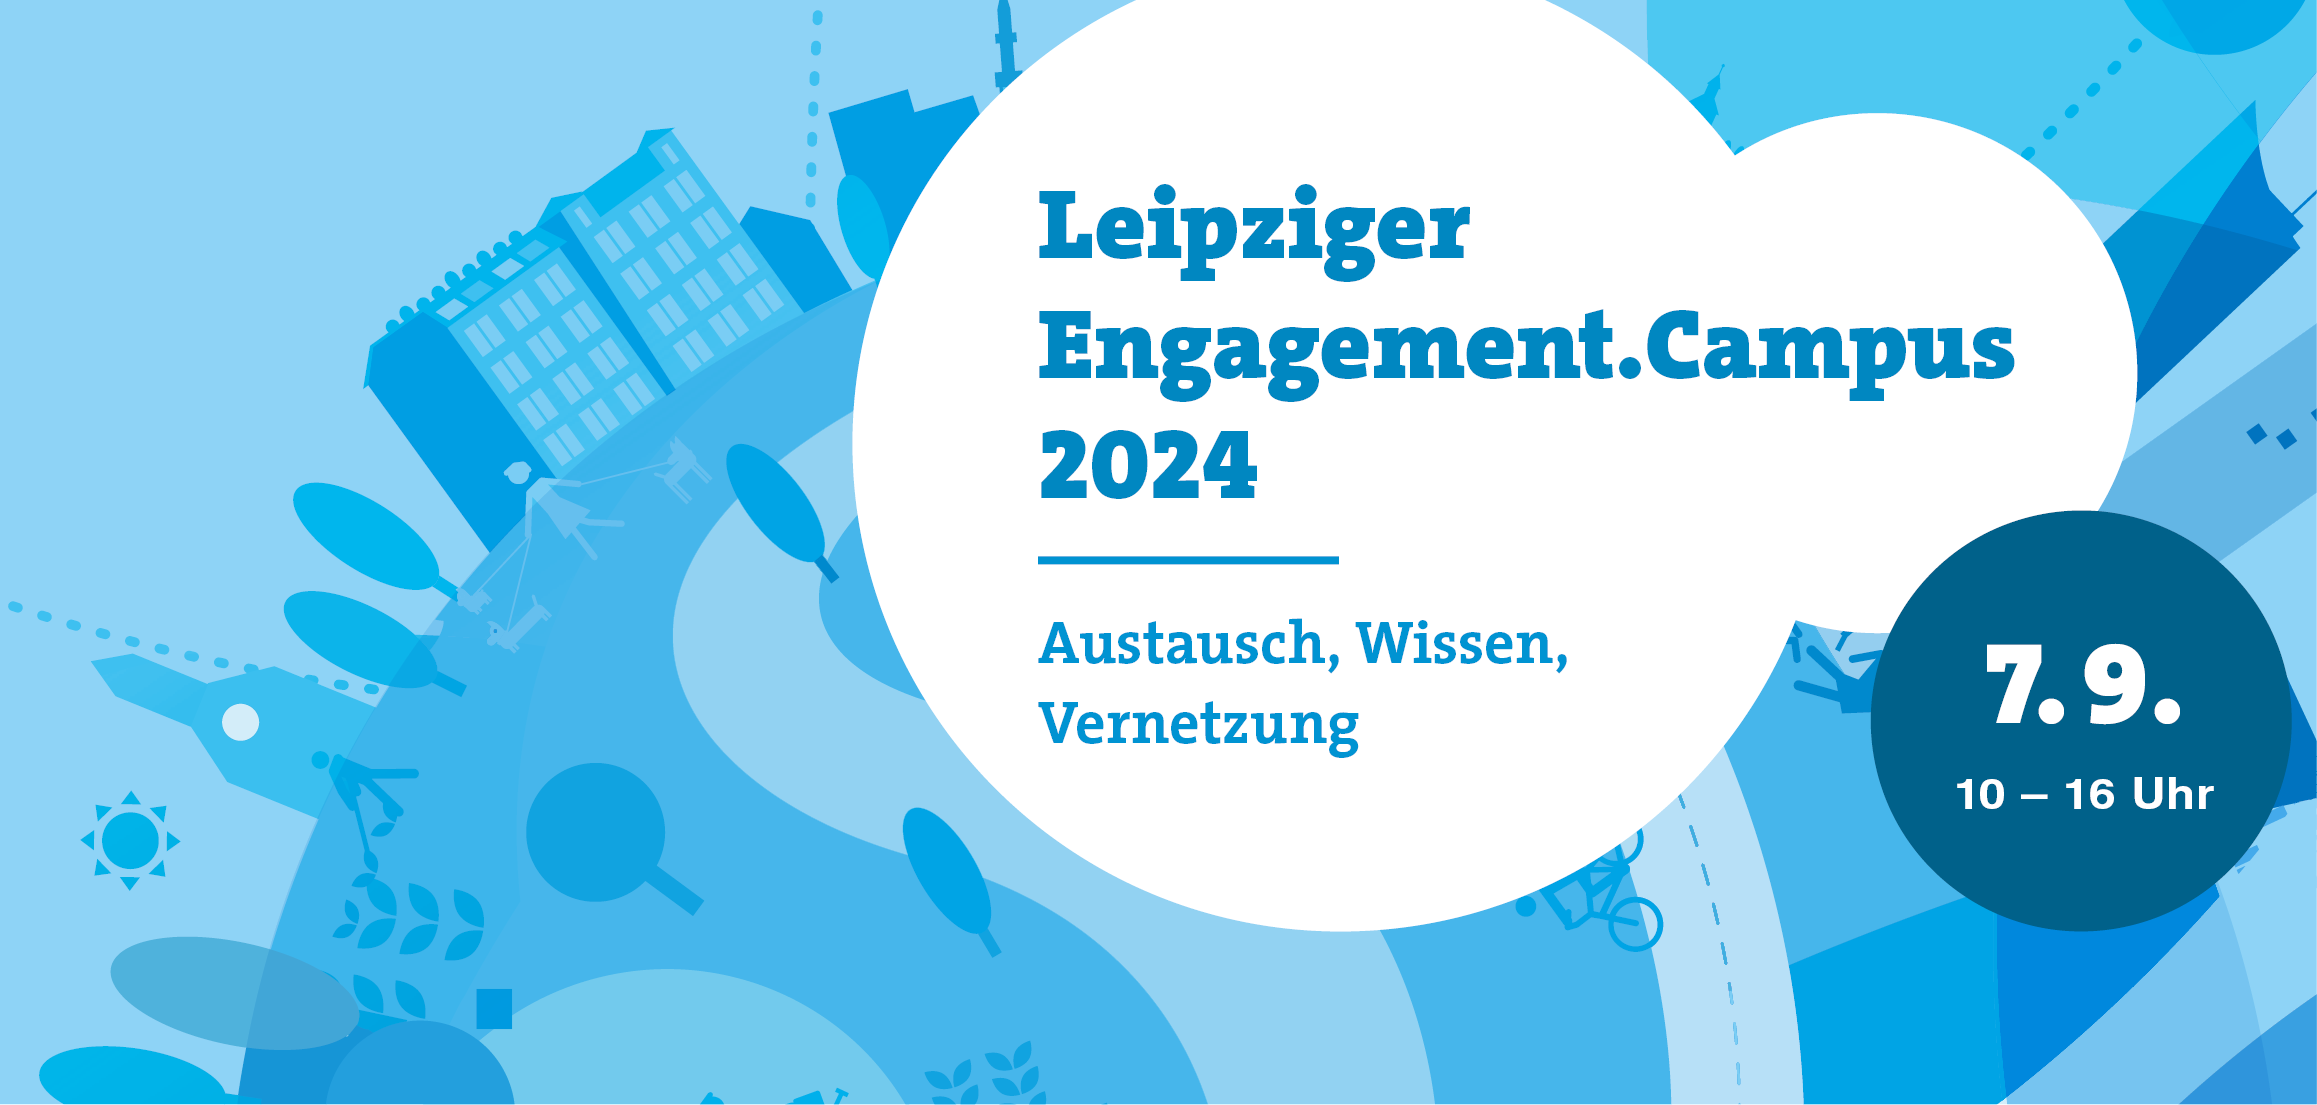 Leipziger Engagement.Campus 2024: Austausch, Wissen, Vernetzung. 7.9., 10 bis 16 Uhr